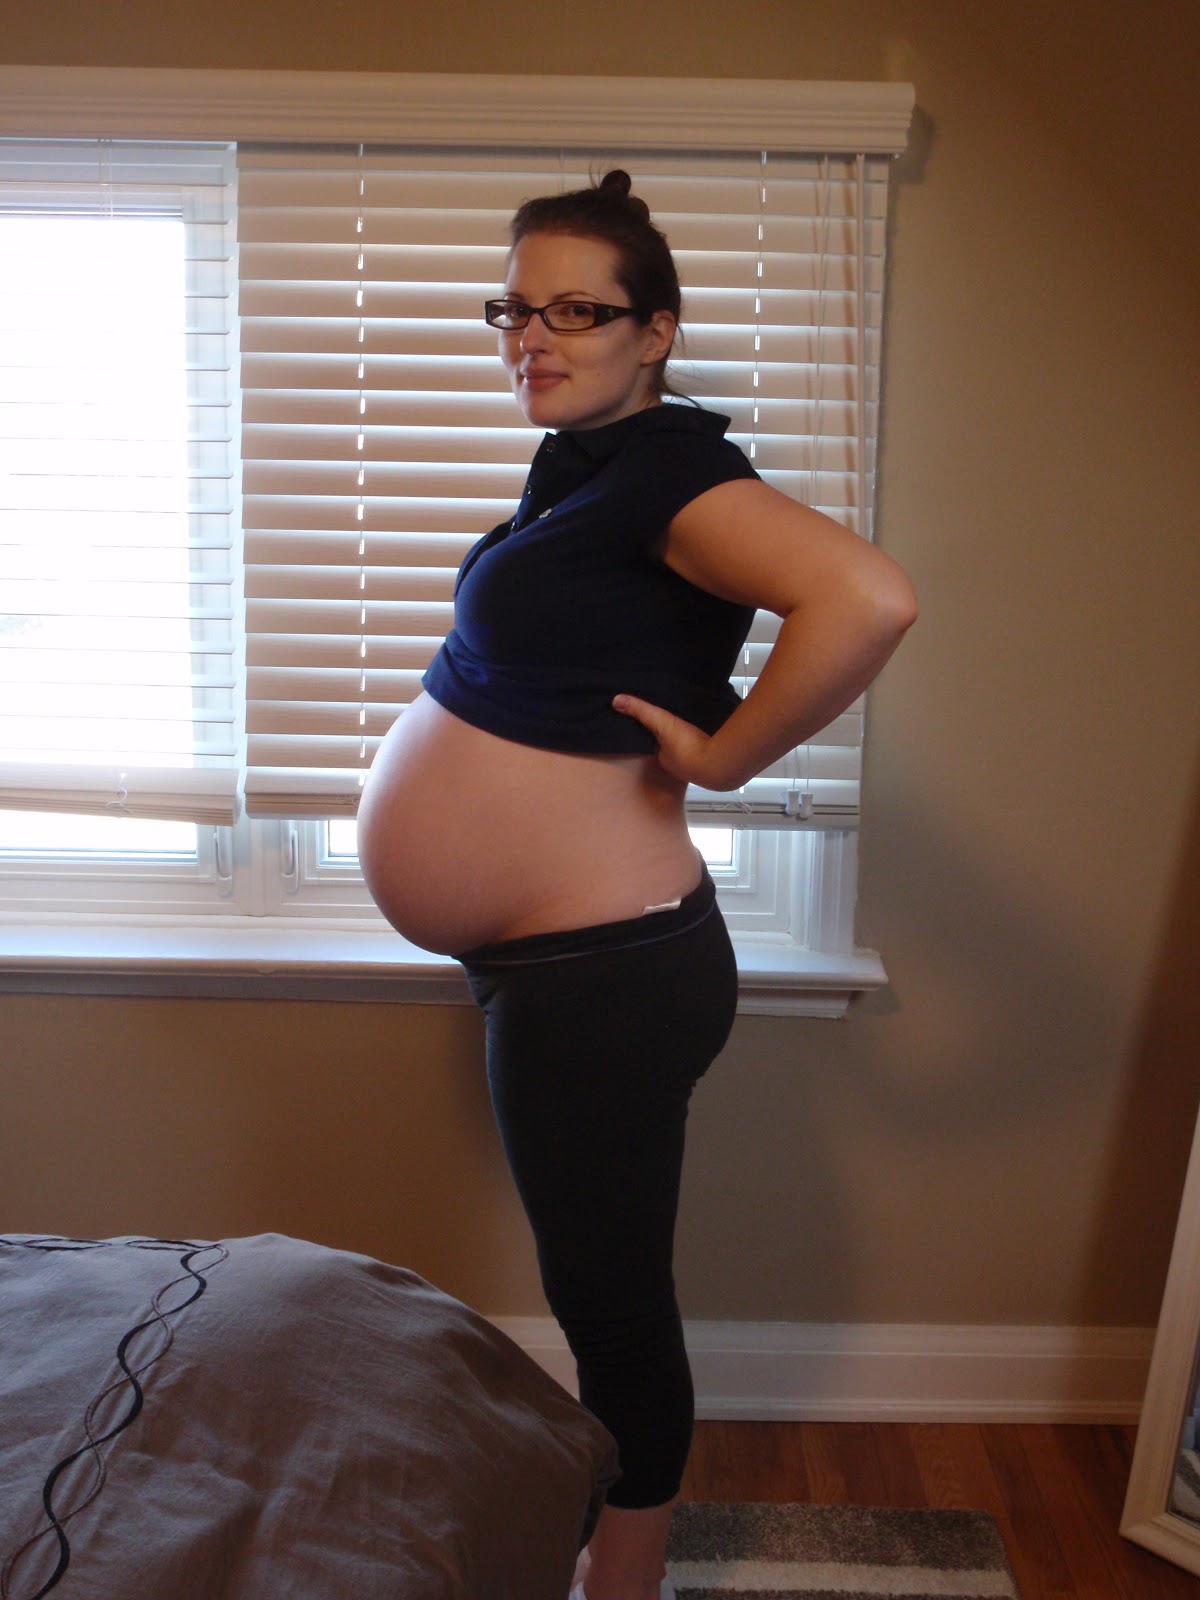 32 неделя беременности шевелится. Беременные. Животик в 32 недели. Живот на 32 неделе беременности. 3͓2͓н͓е͓д͓е͓л͓и͓ б͓е͓р͓е͓м͓.